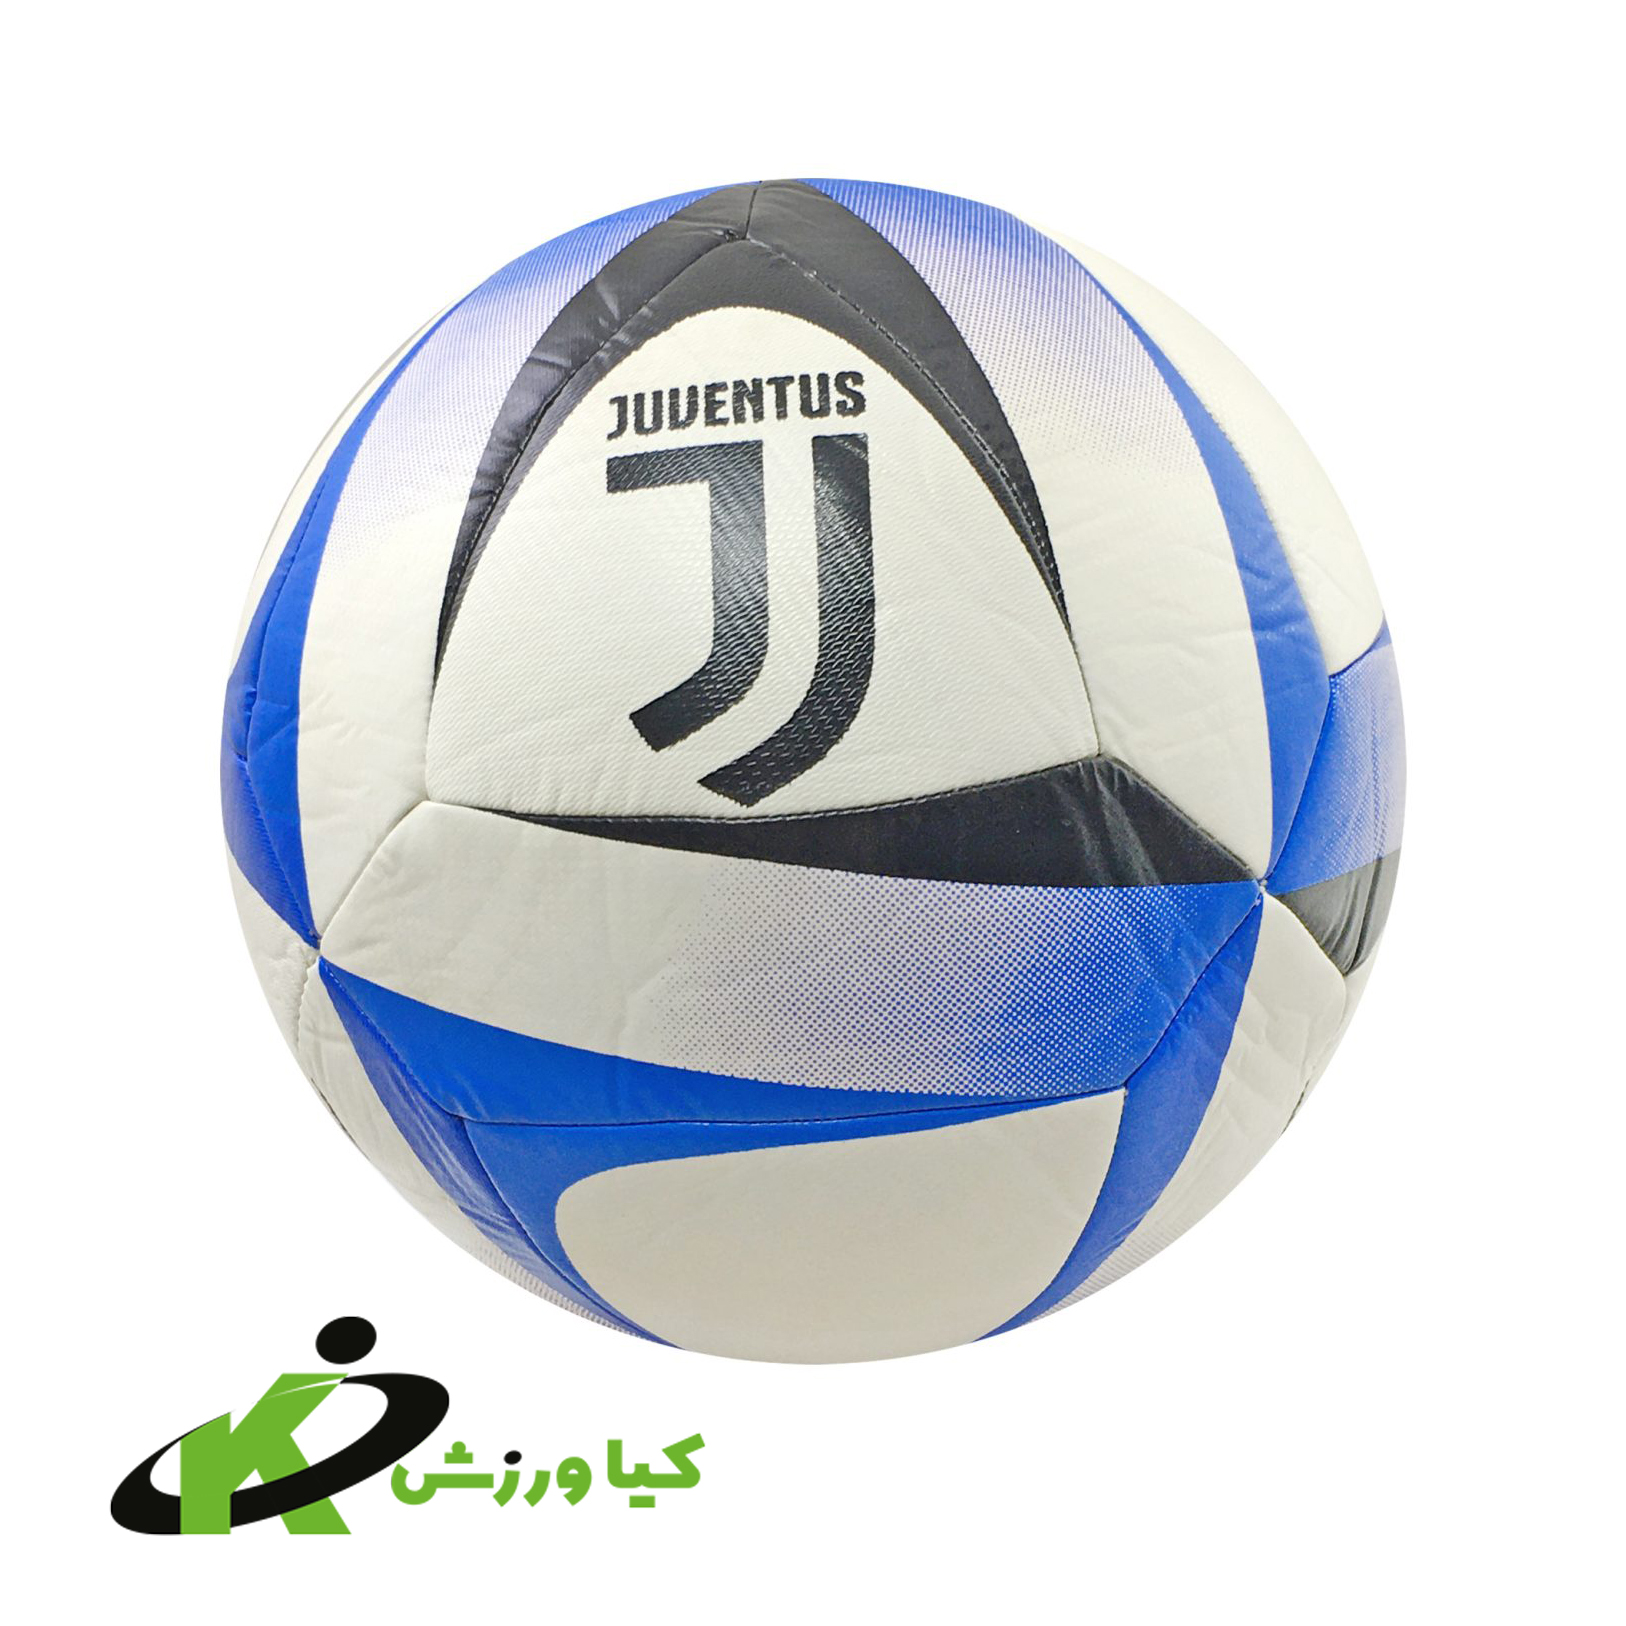 توپ فوتبال یوونتوس Juventus سایز 5